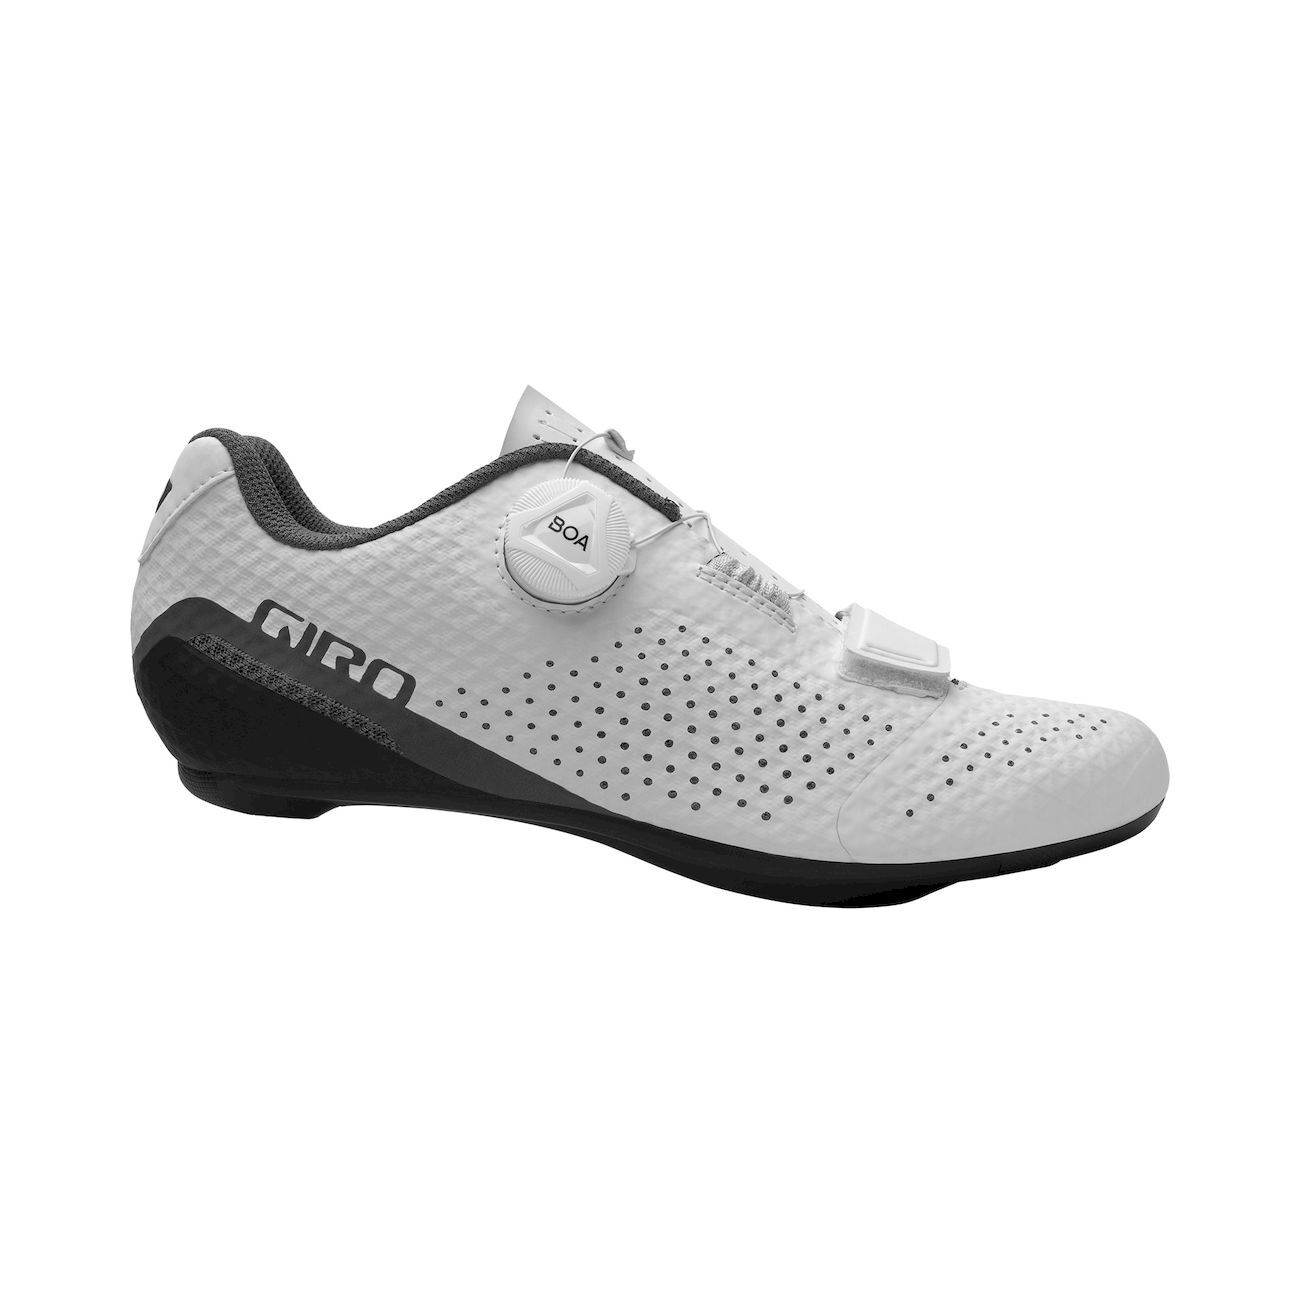 Giro Cadet - Cycling shoes - Women's